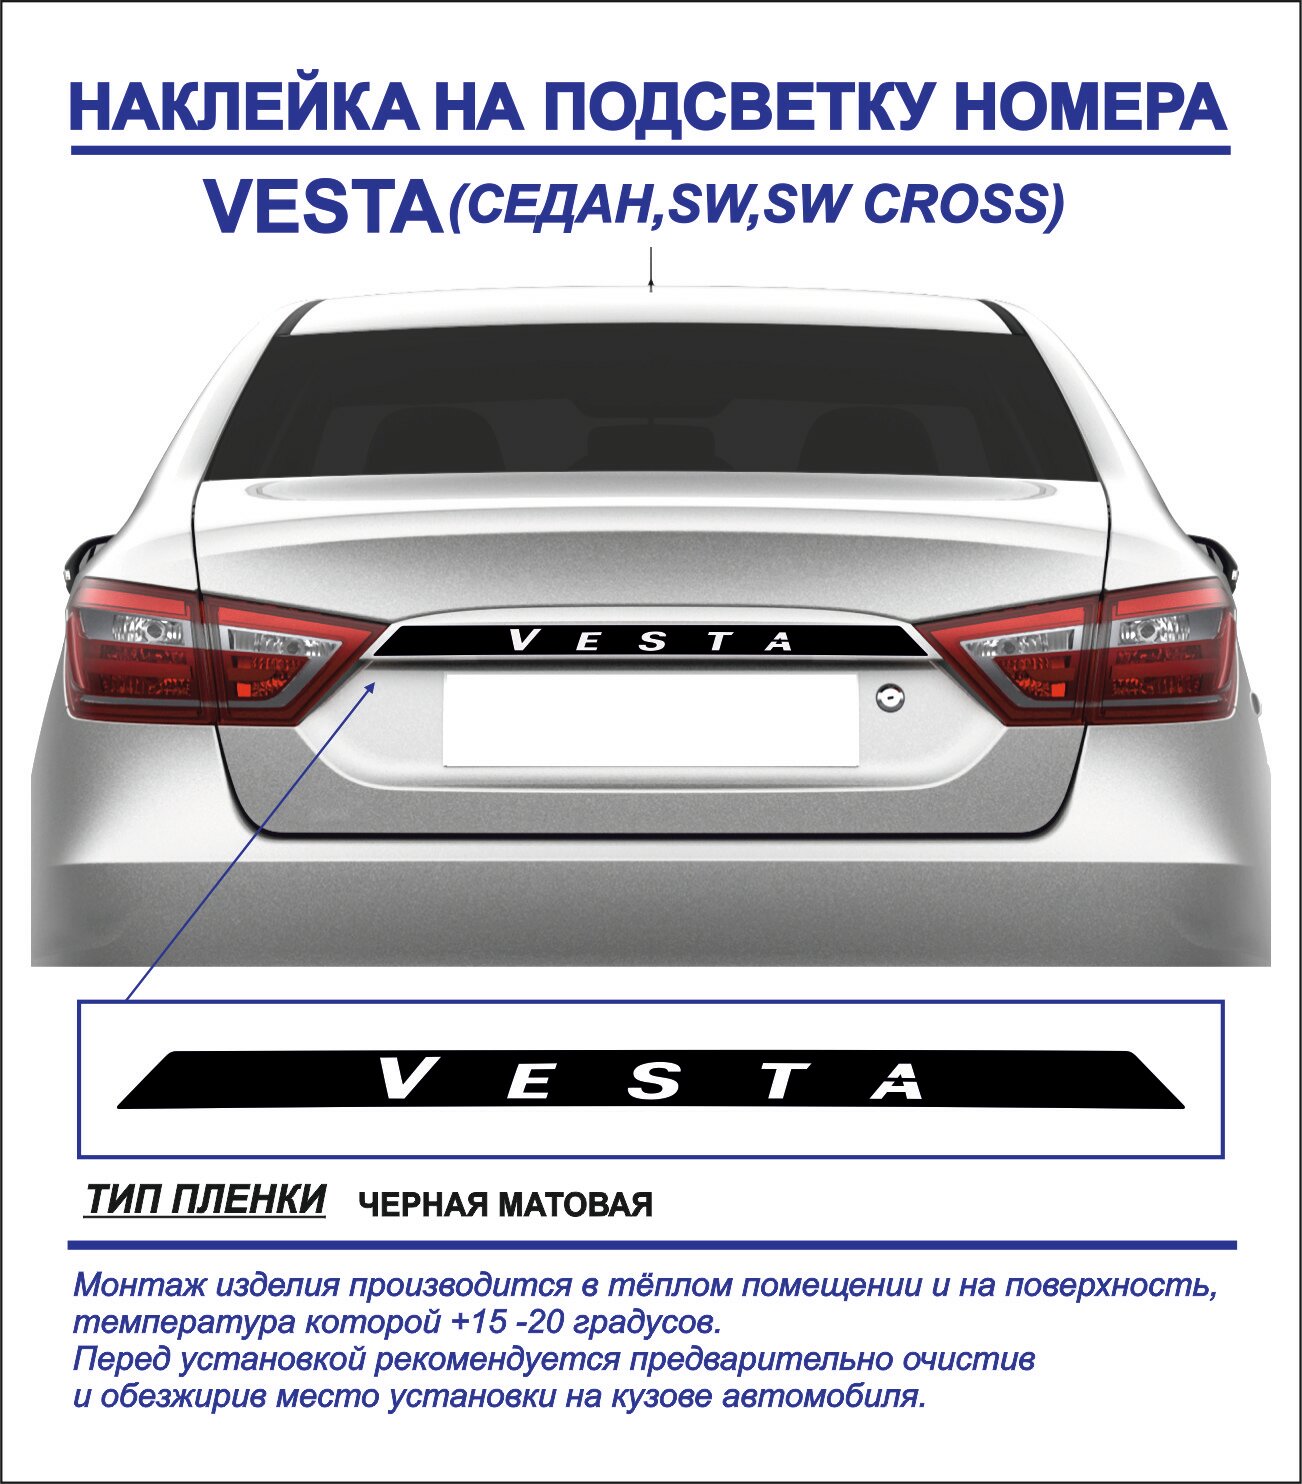 Наклейка тюнинг на подсветку номера Lada Vesta седан sw sw cross (черная матовая) 1шт.